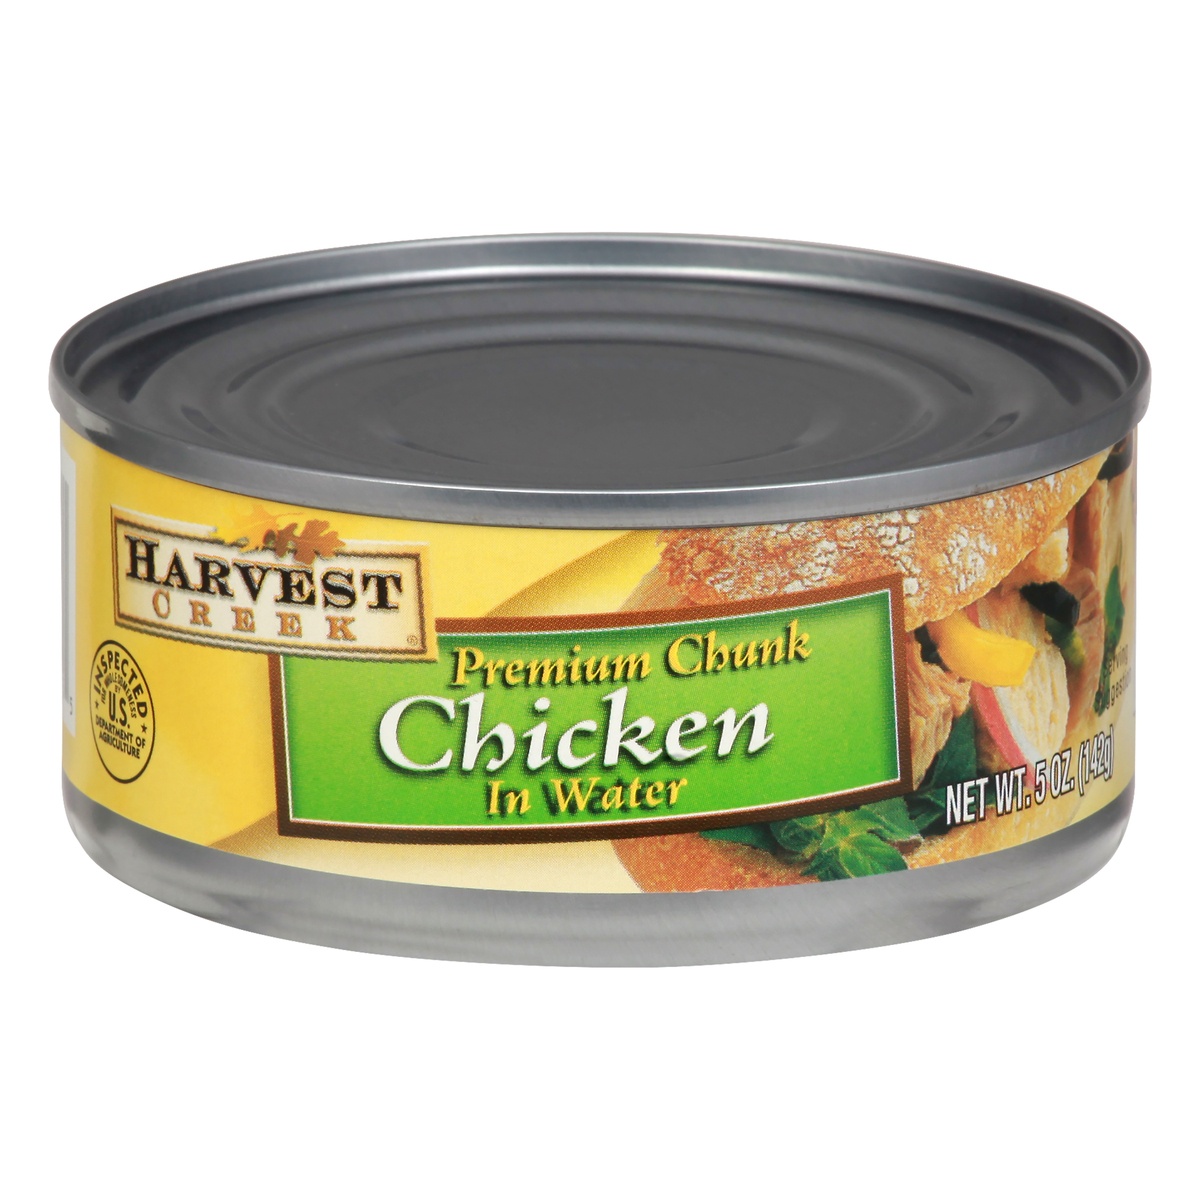 slide 1 of 1, Harvest Creek Premium Chunk Chicken White/Dark in Water, 5 oz